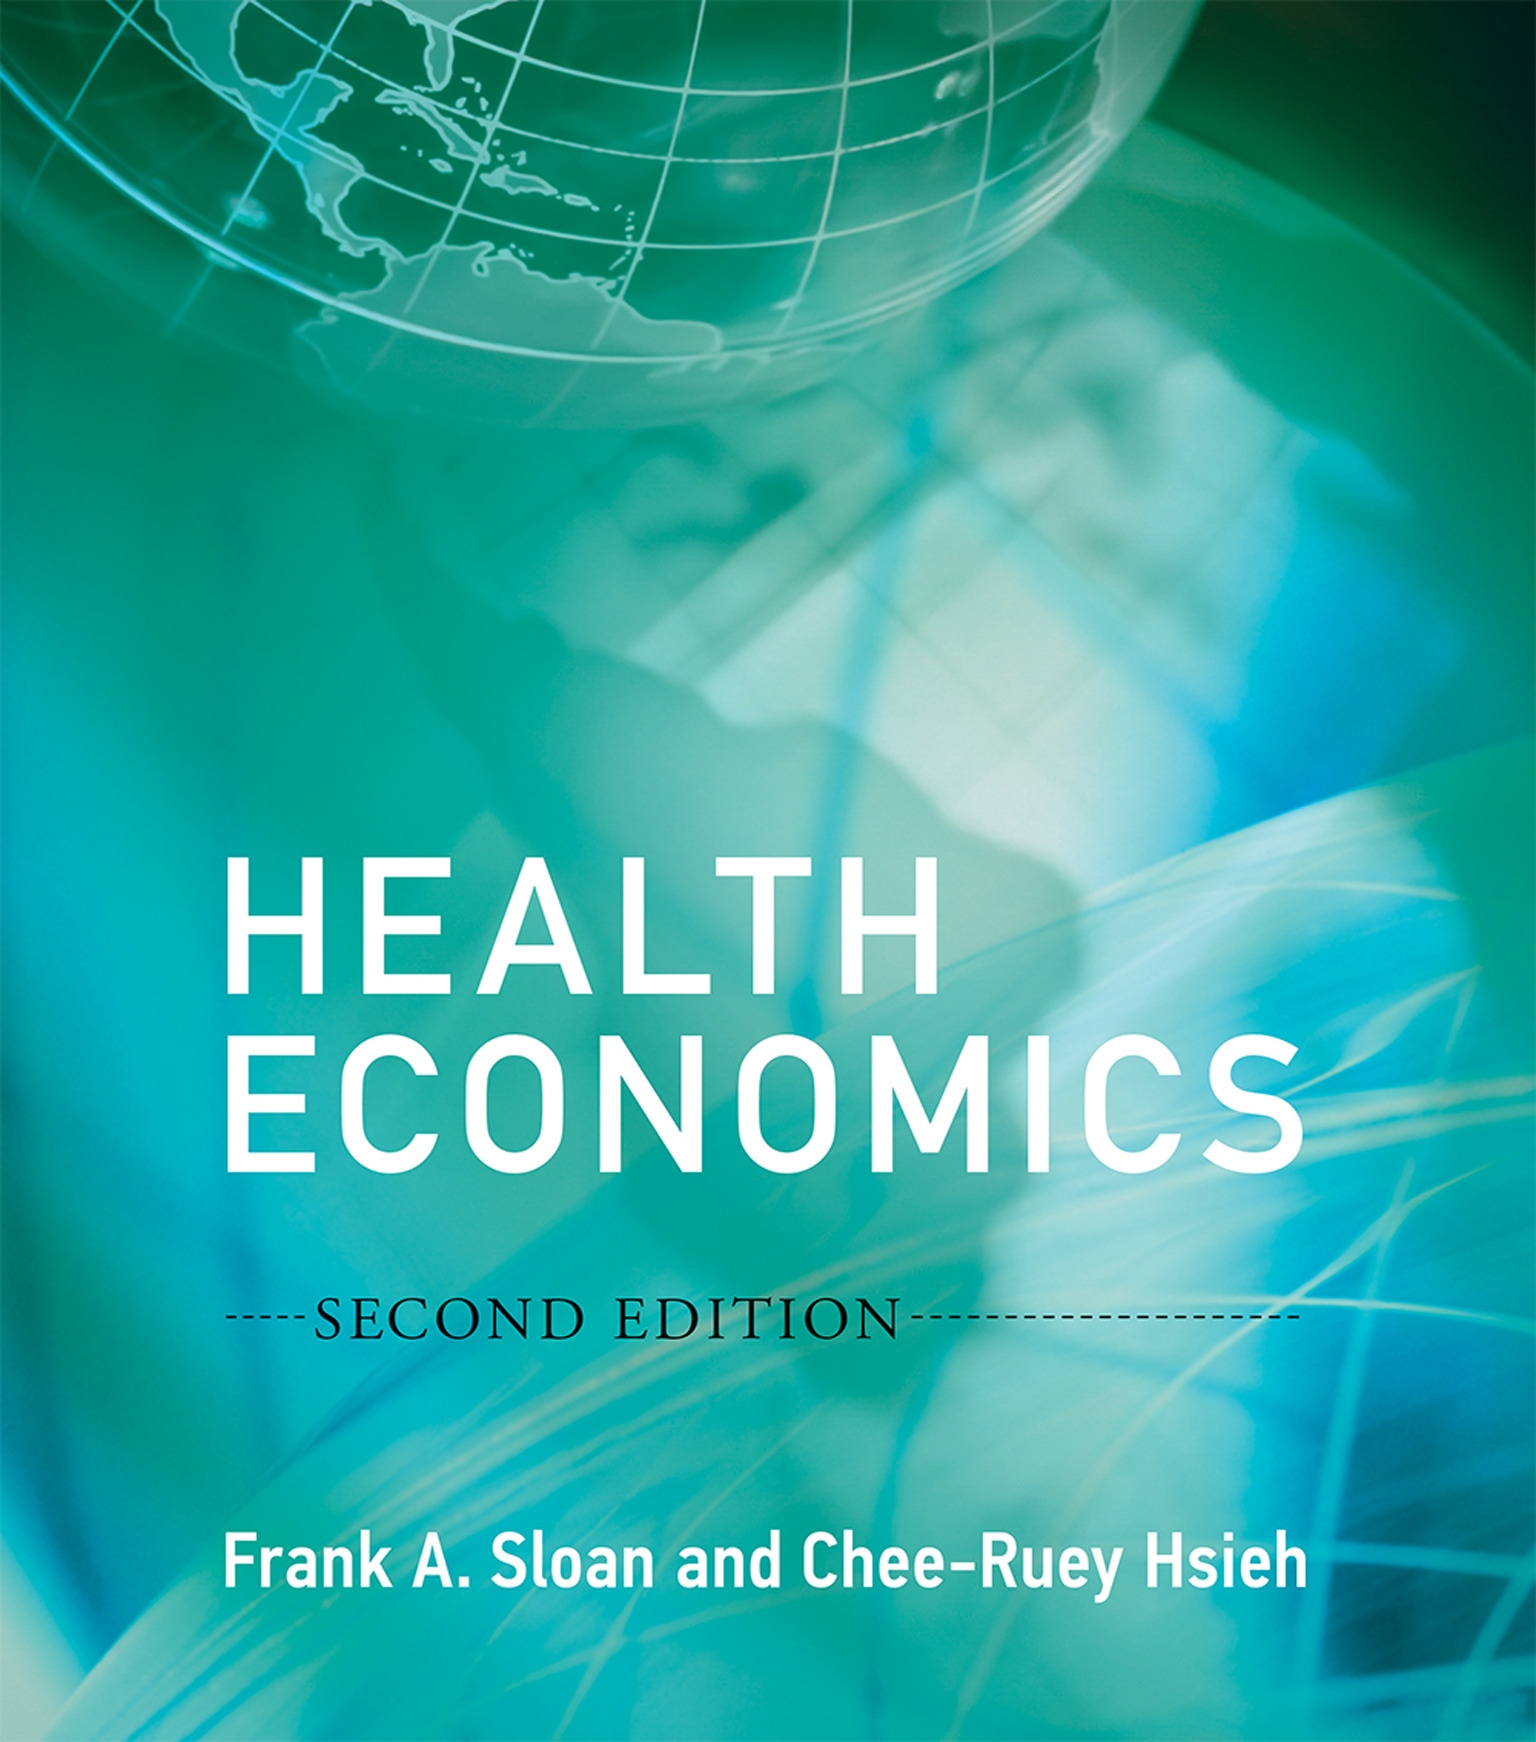 thesis on health economics